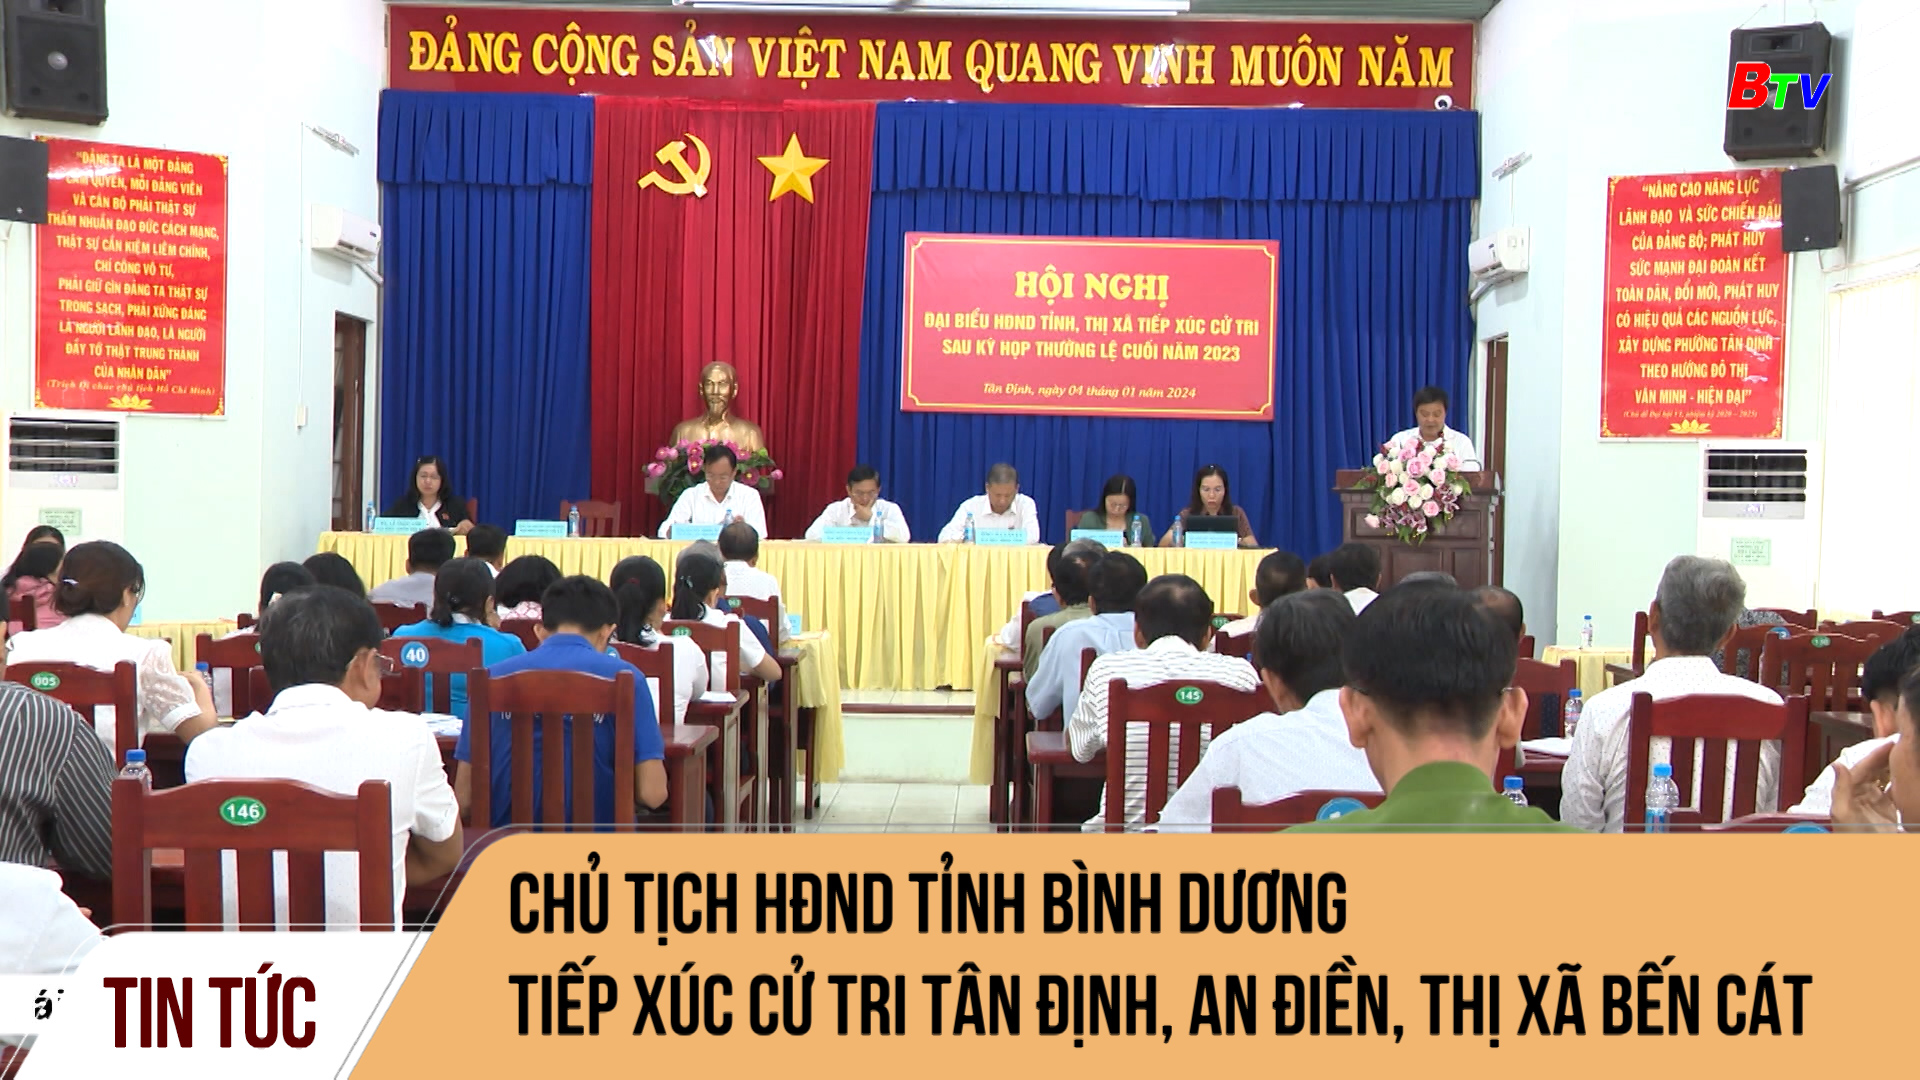 Chủ tịch HĐND tỉnh Bình Dương tiếp xúc cử tri Tân Định, An Điền (Thị xã Bến Cát)	